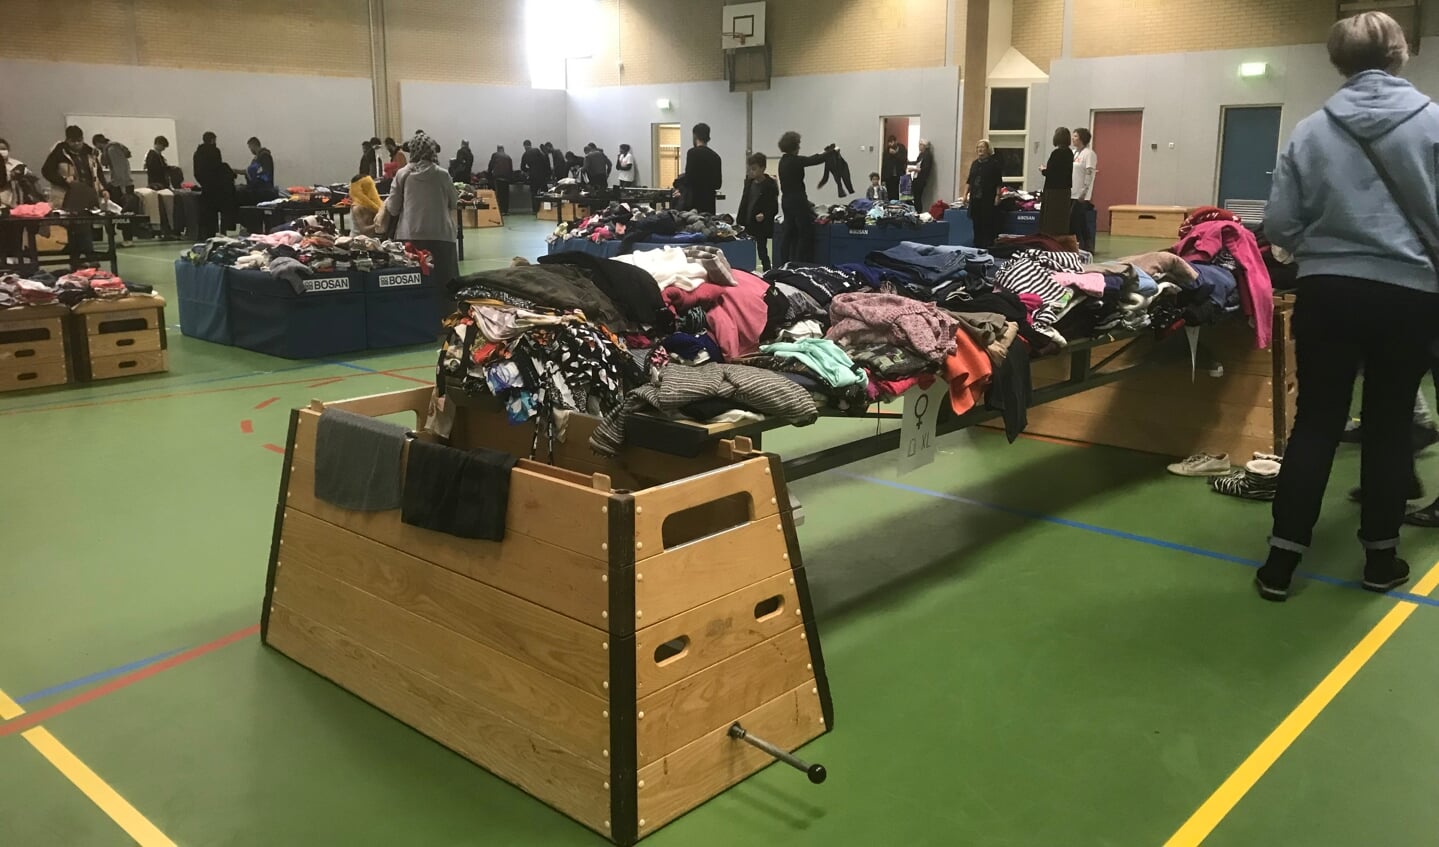 In de sporthal ligt de kleding per maat gesorteerd klaar, zodat vluchtelingen makkelijker iets van hun gading kunnen zoeken